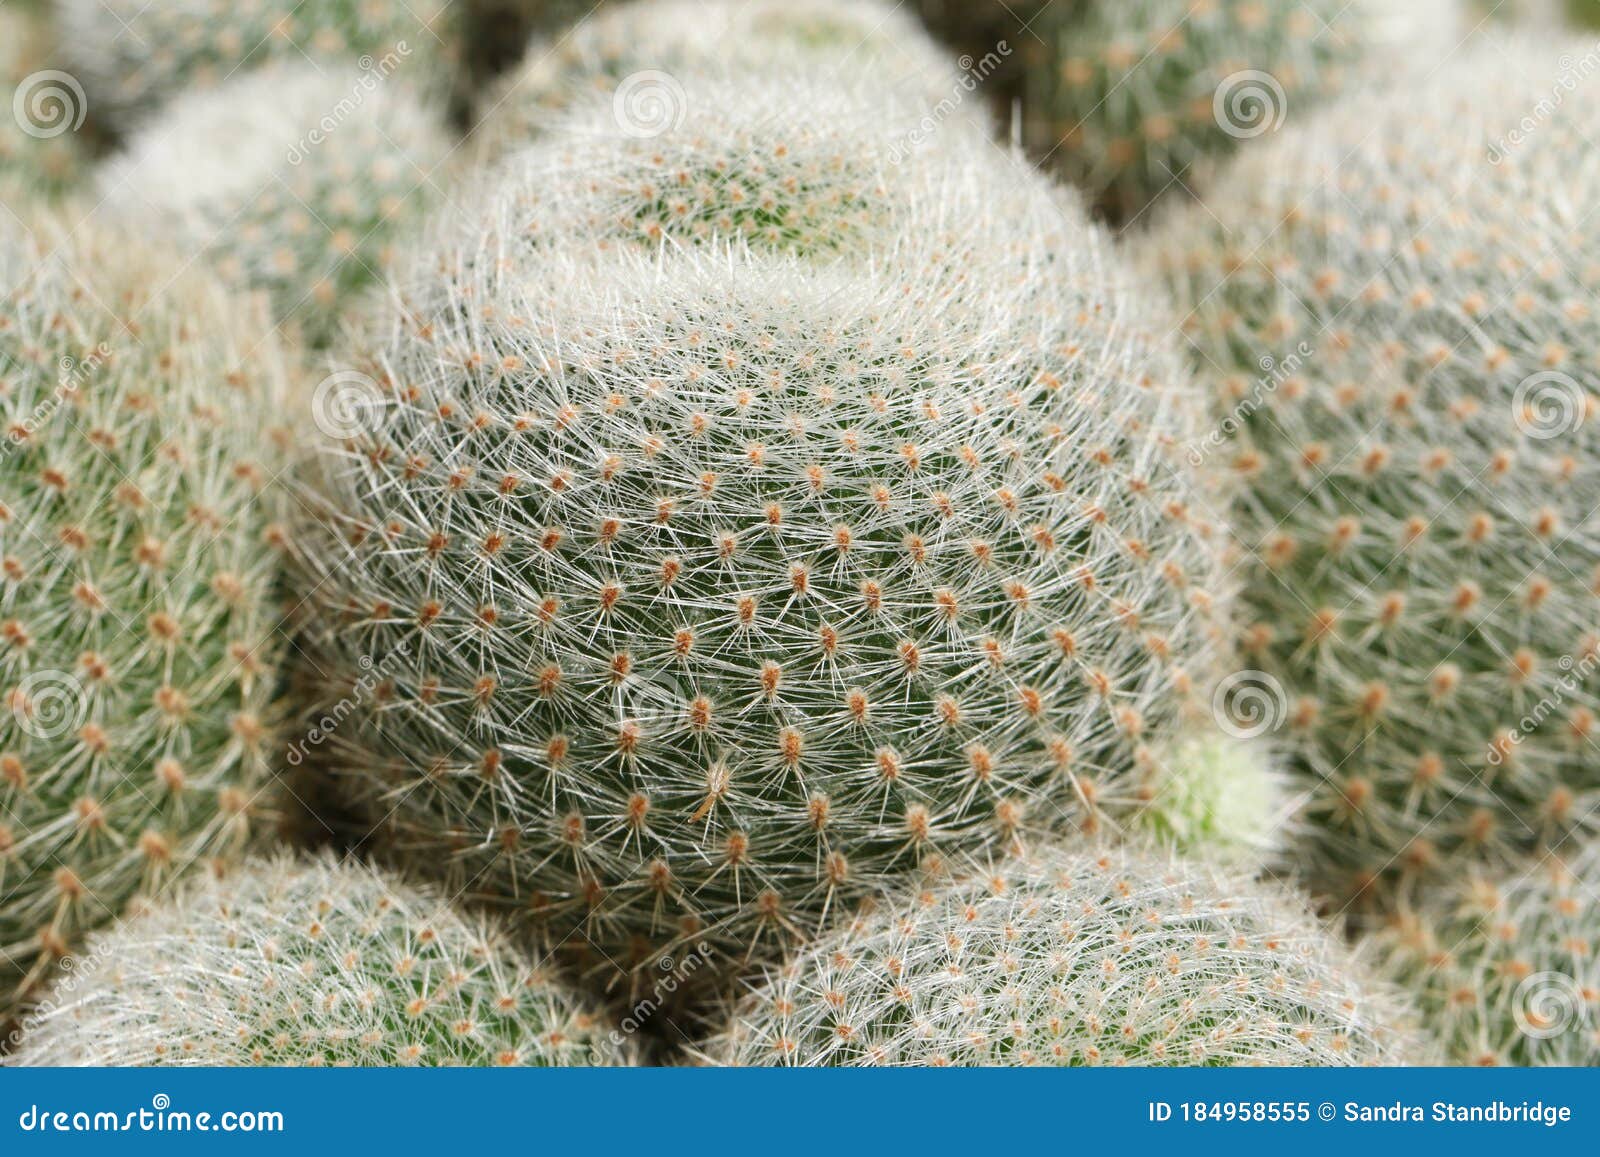 a group of beautiful thorny cactus, rebutia lima naranja.